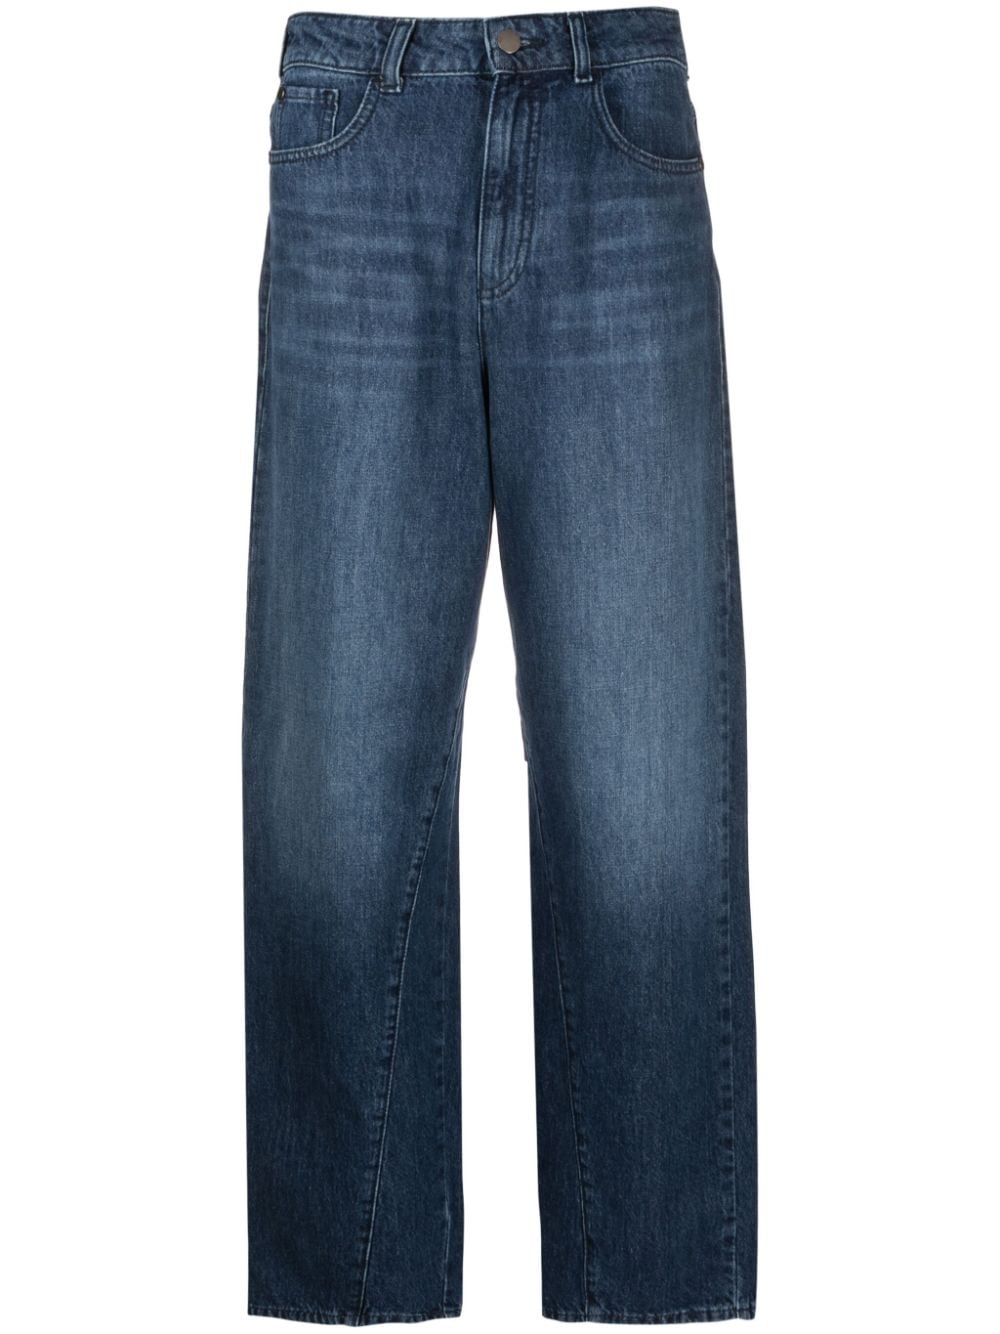 Emporio Armani Jeans Blue